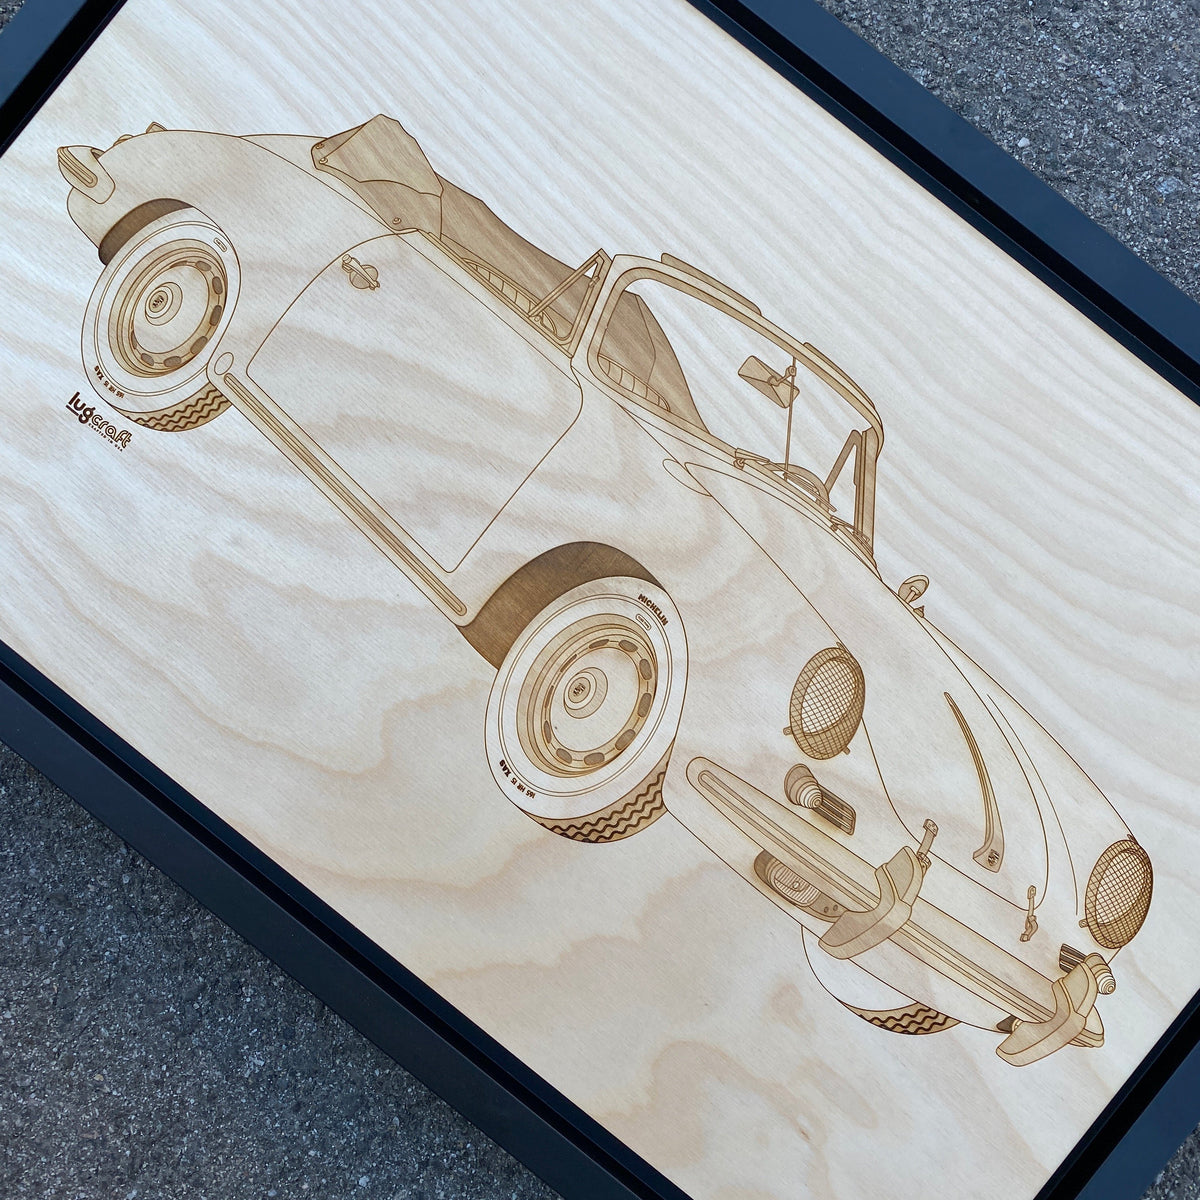 Porsche 356 SC Cabriolet Framed Wood Engraved Artwork